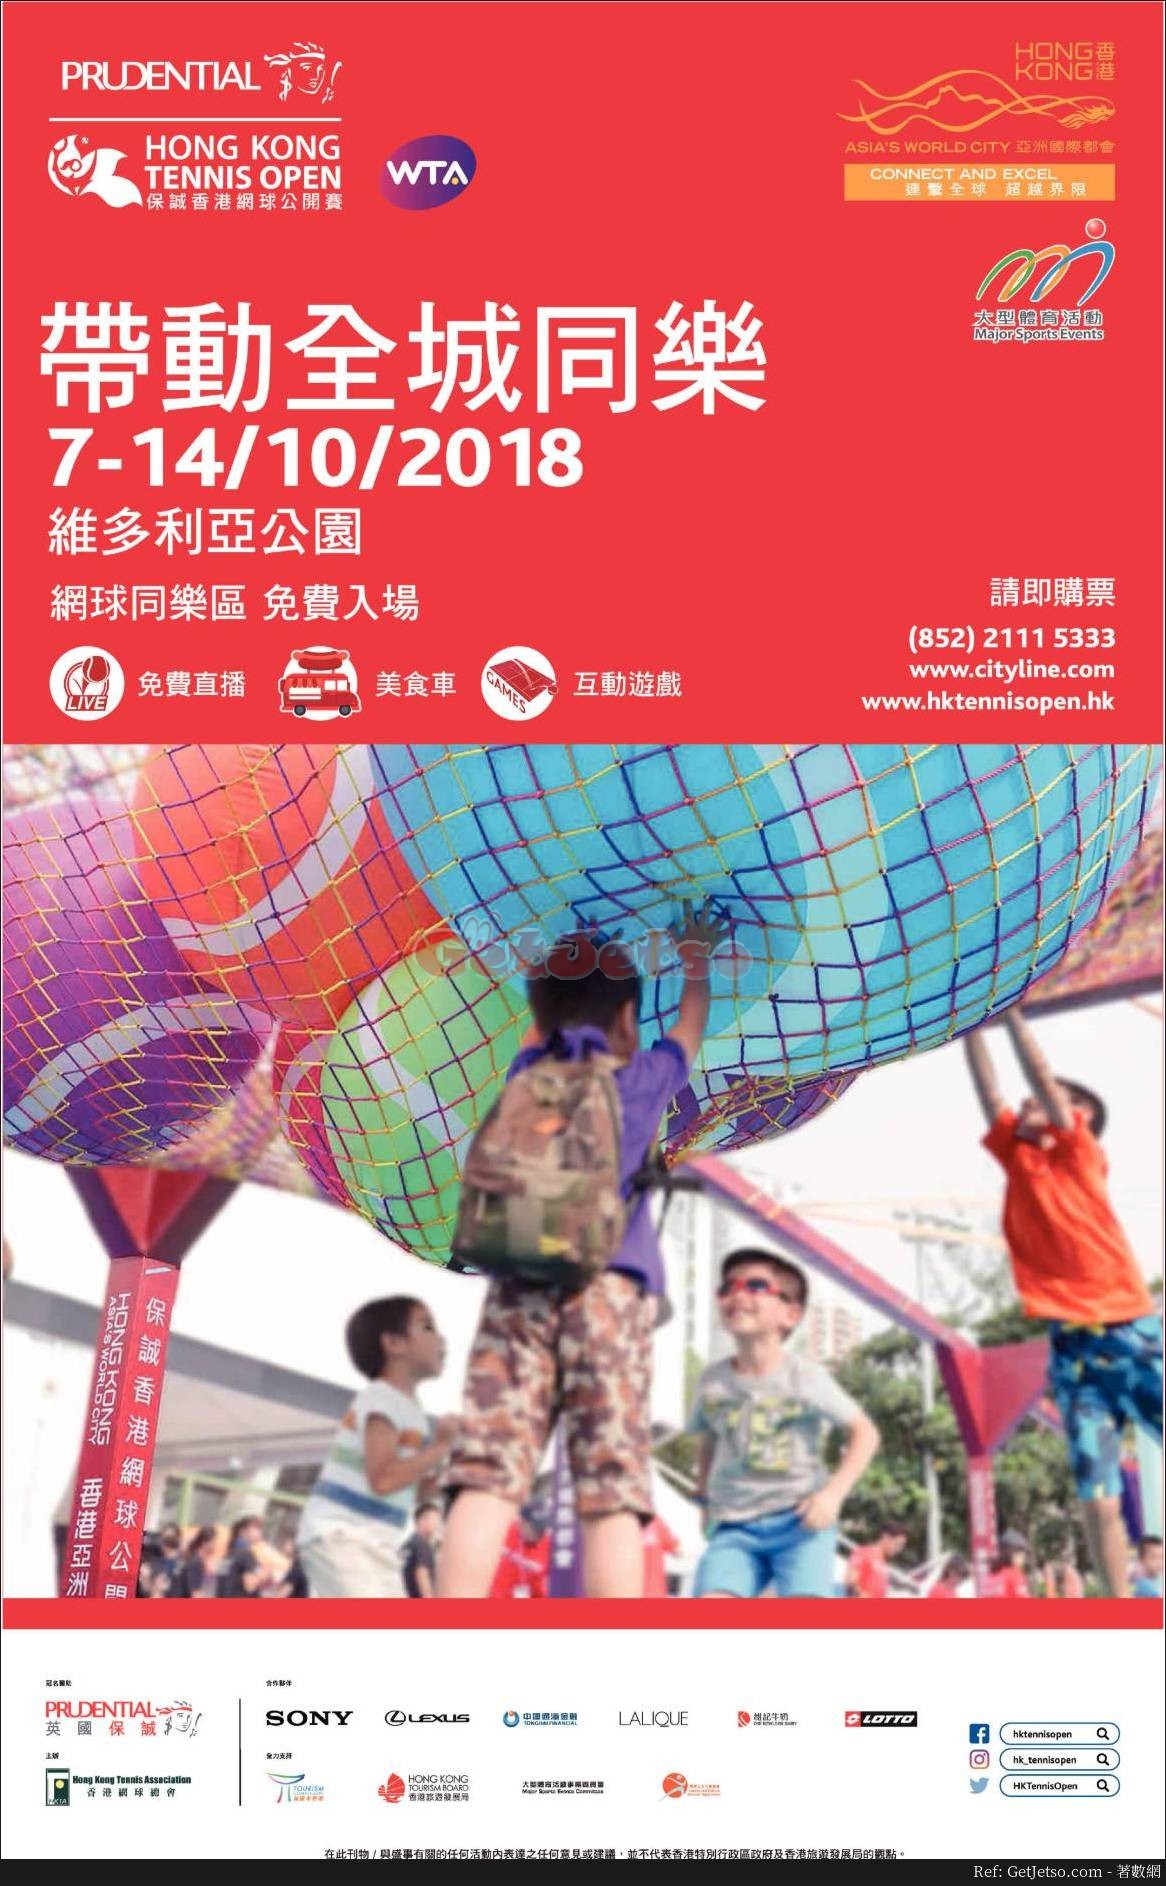 保誠香港網球公開賽網球同樂區免費入場@維多利亞公園(18年10月7-14日)圖片1